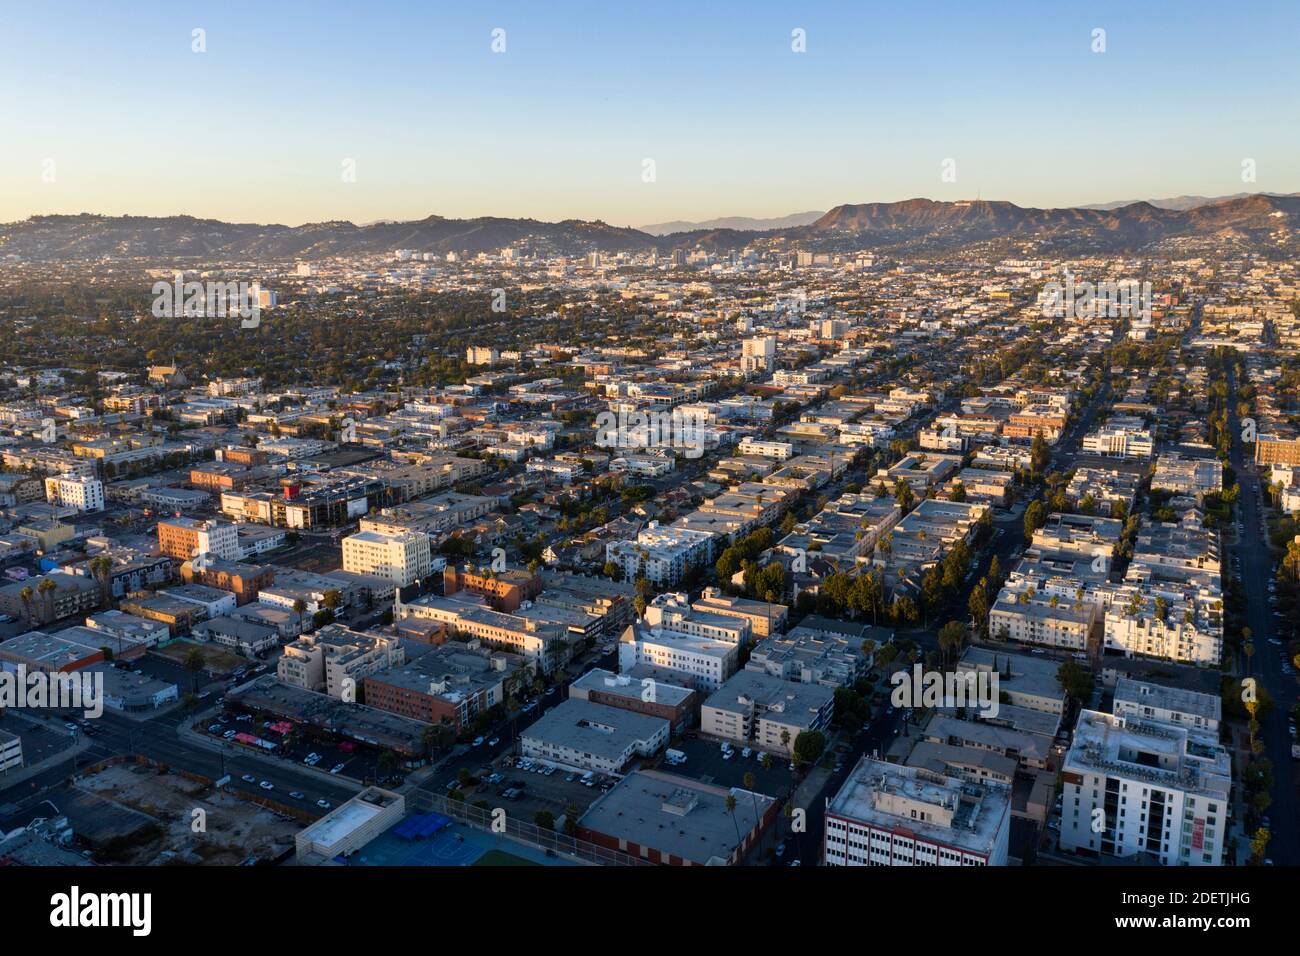 Vista aérea del centro urbano de los Ángeles mirando al otro lado de la ciudad hacia Hollywood Foto de stock